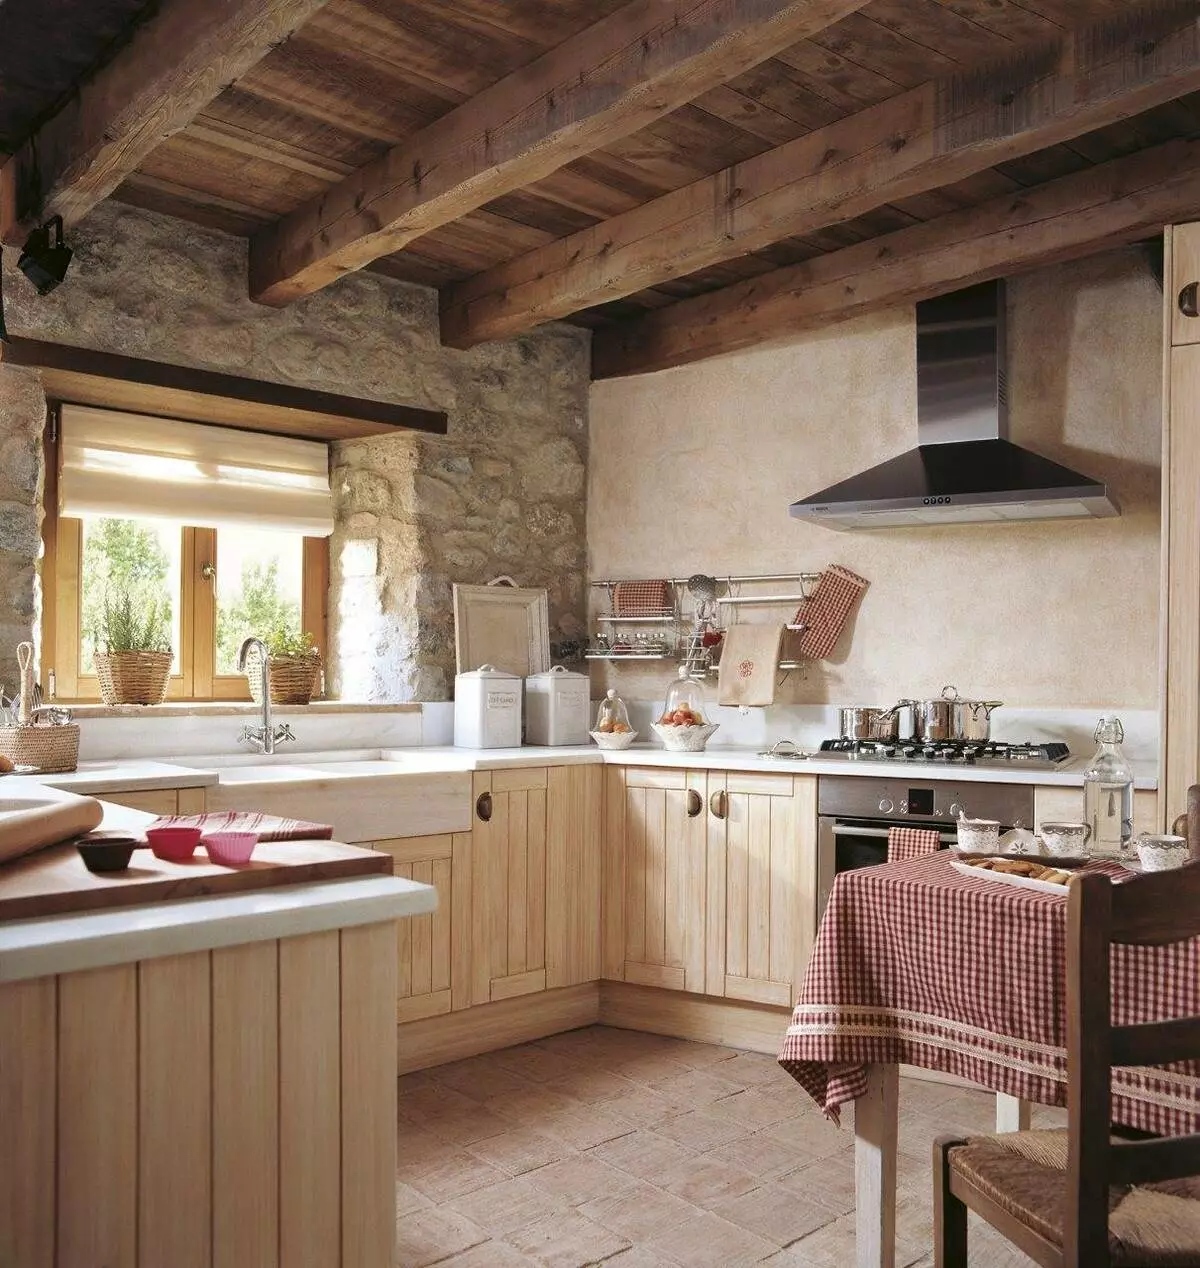 Kök i ett rustikt hus (68 bilder): Inredningsdesignidéer i ett gammalt lanthus med spis. Eco-Promariant arrangemang och dekoration av köket i byn 9457_12